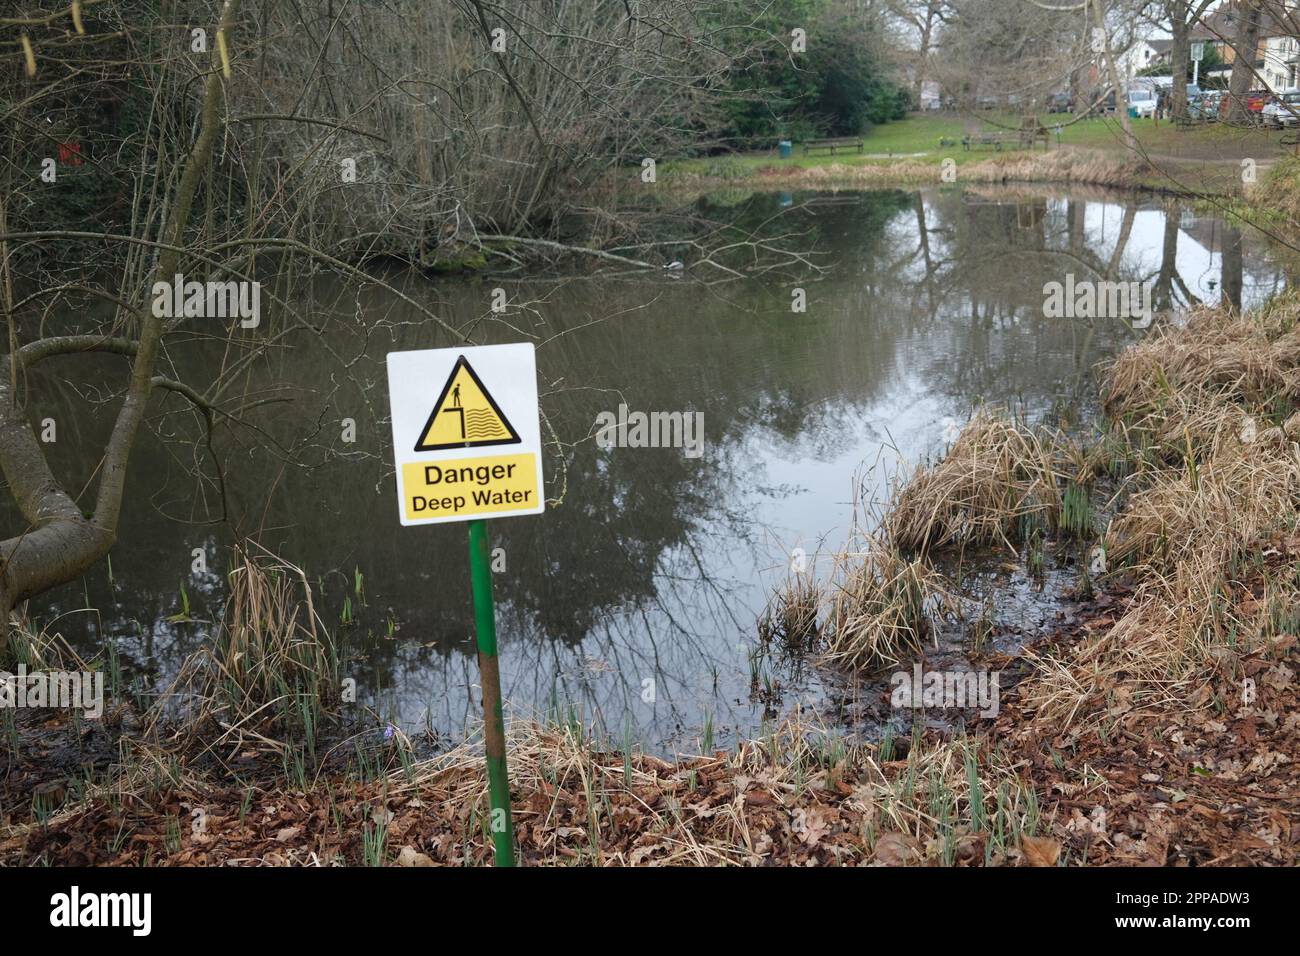 Un avviso nel villaggio di Letchmore Heath per stare attenti alle acque profonde e al pericolo che essa pone Foto Stock